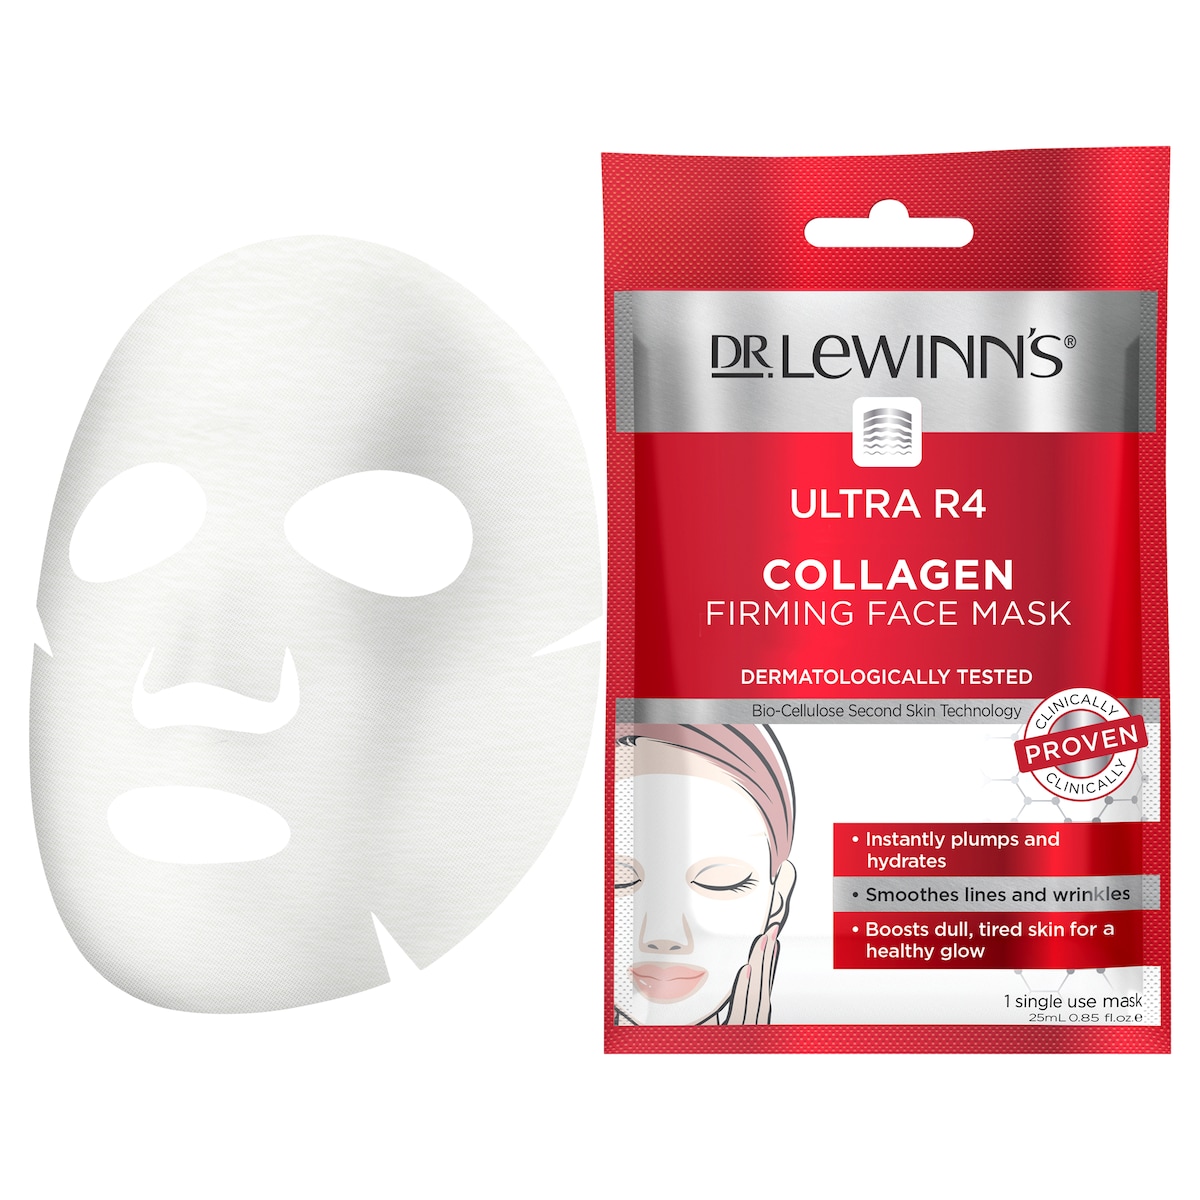 Dr Lewinns Ultra R4 Firming Face Mask